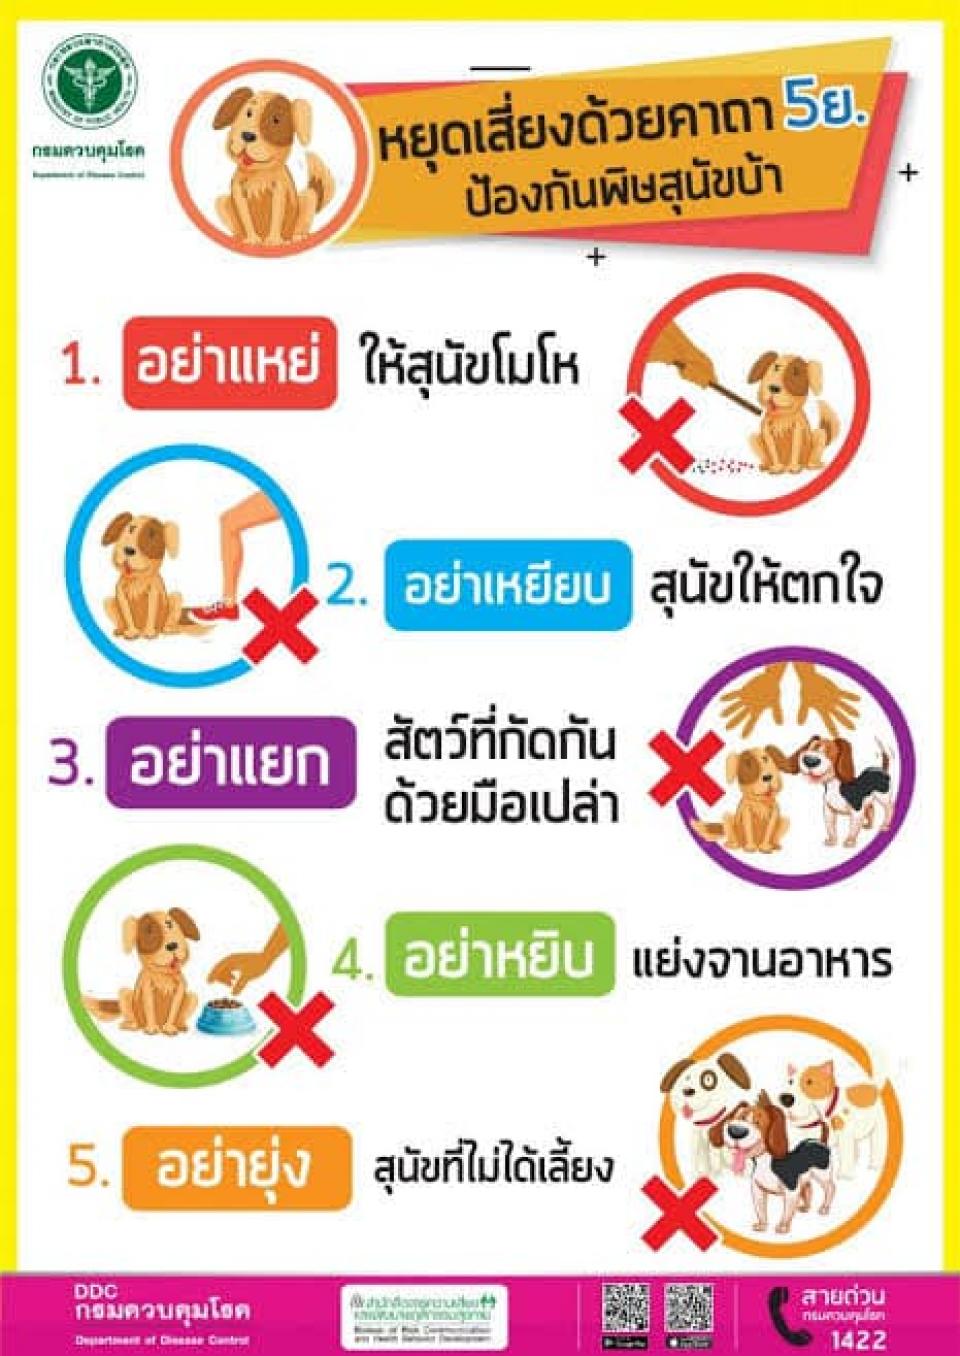 ป้องกันโรคพิษสุนัขบ้า